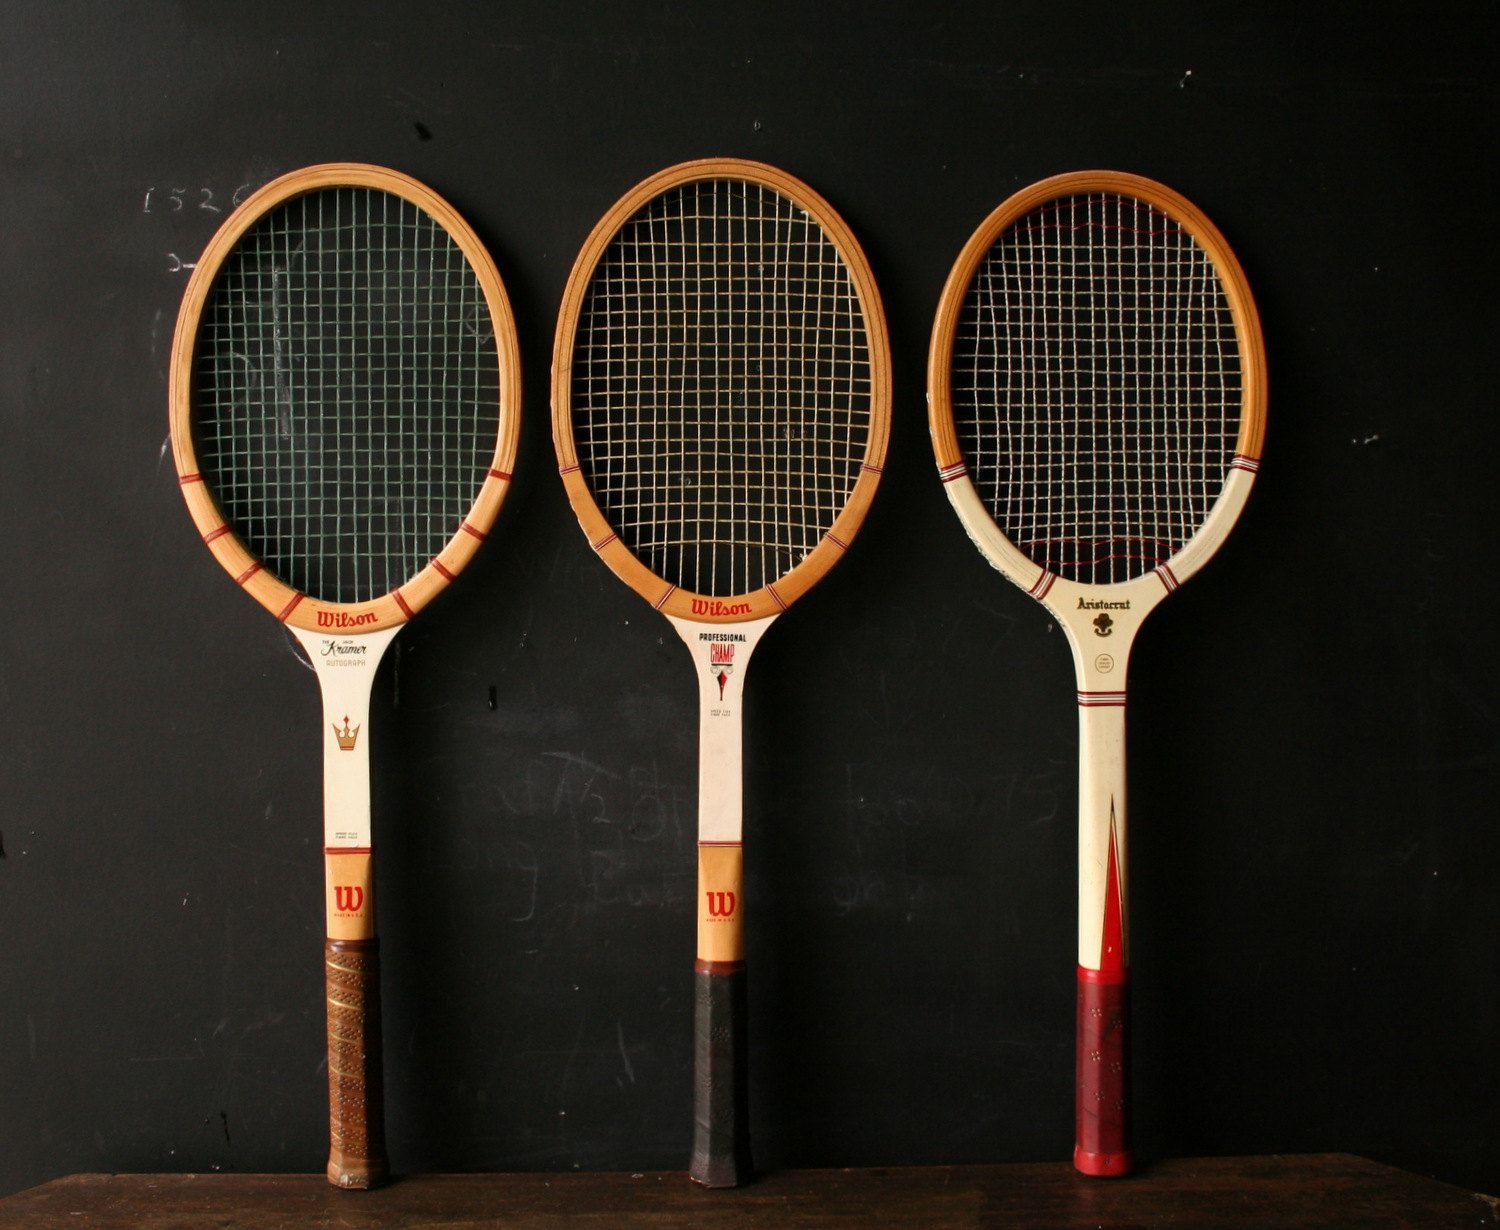 Ракетка для большого тенниса взрослая. Ракетка Wilson ретро. Теннисные ракетки t.t Racket boki. Snauwaert теннисная ракетка 1979.